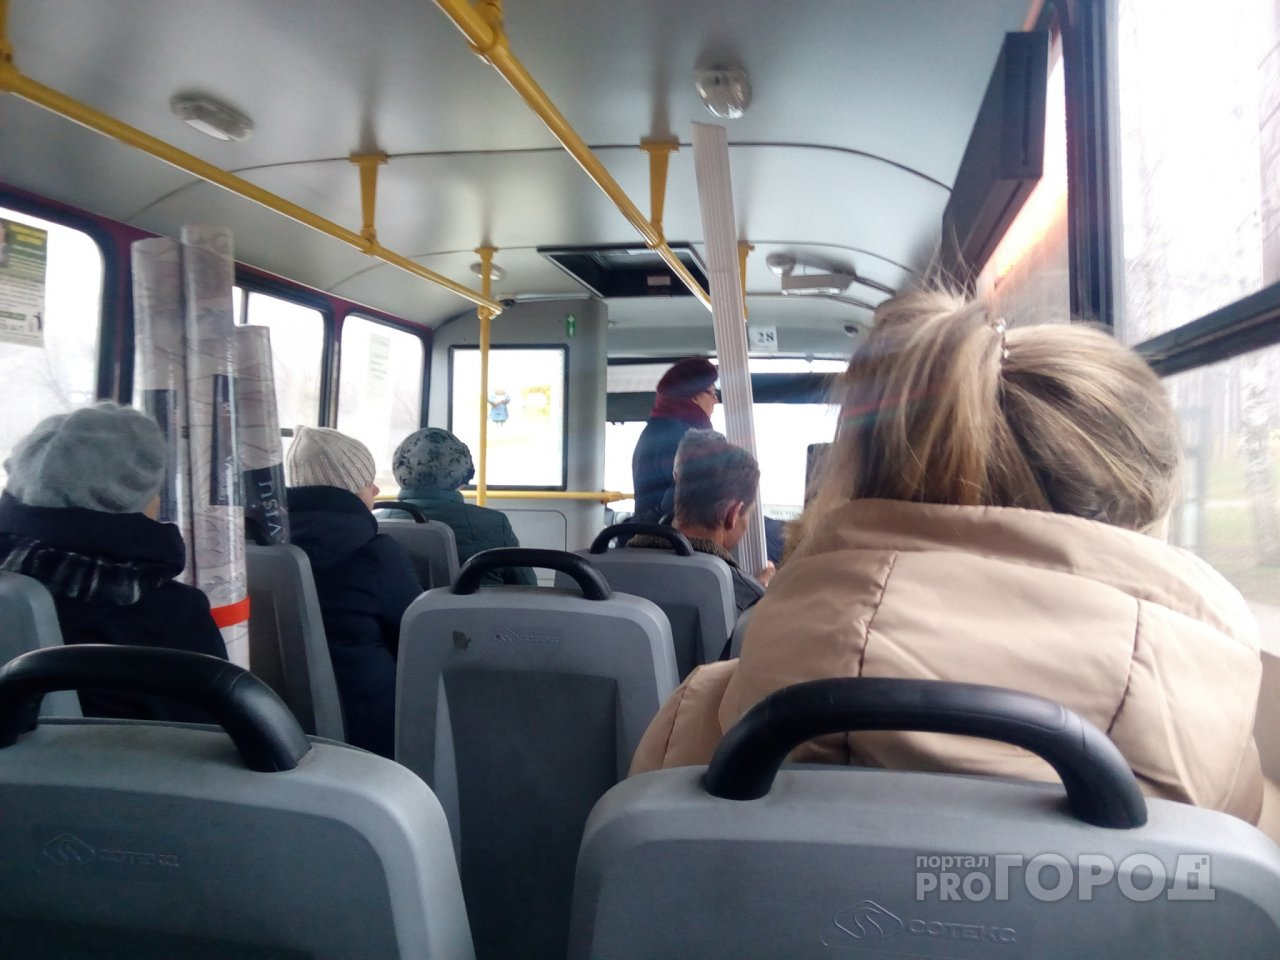 "Вы помешались со своими гаджетами!": скандал в маршрутке Ярославля напугал пассажиров